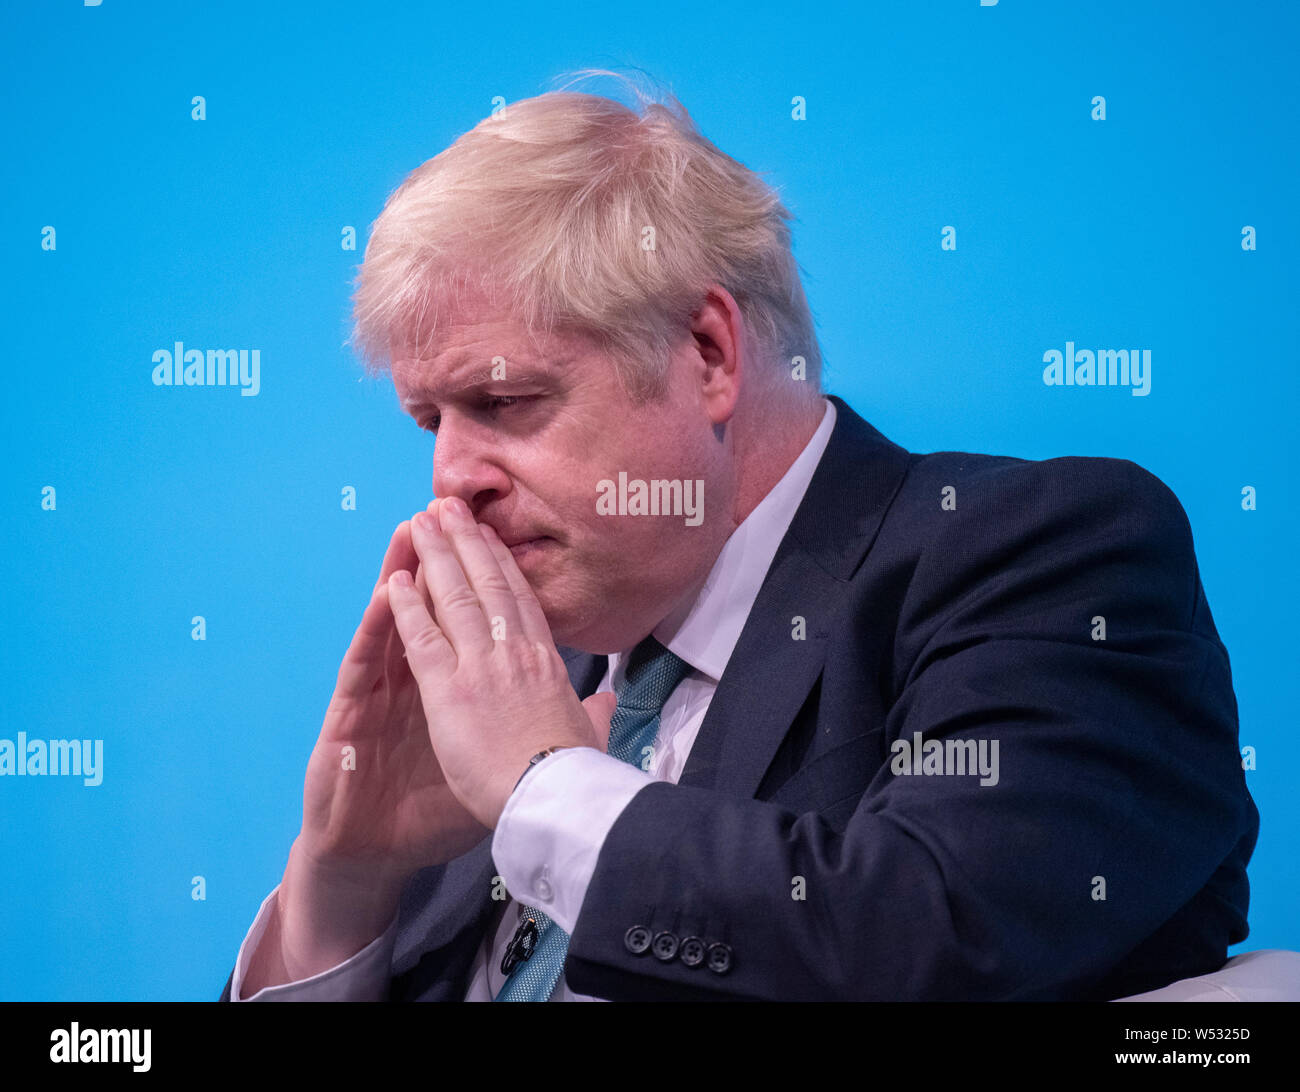 Konservativen Spitzenkandidaten Boris Johnson kommt, bevor man mit einem Publikum von der Partei, als er in eine konservative Partei Führung hustings Ereignis am York Barbican am 04. Juli 2019 in York, England Stockfoto